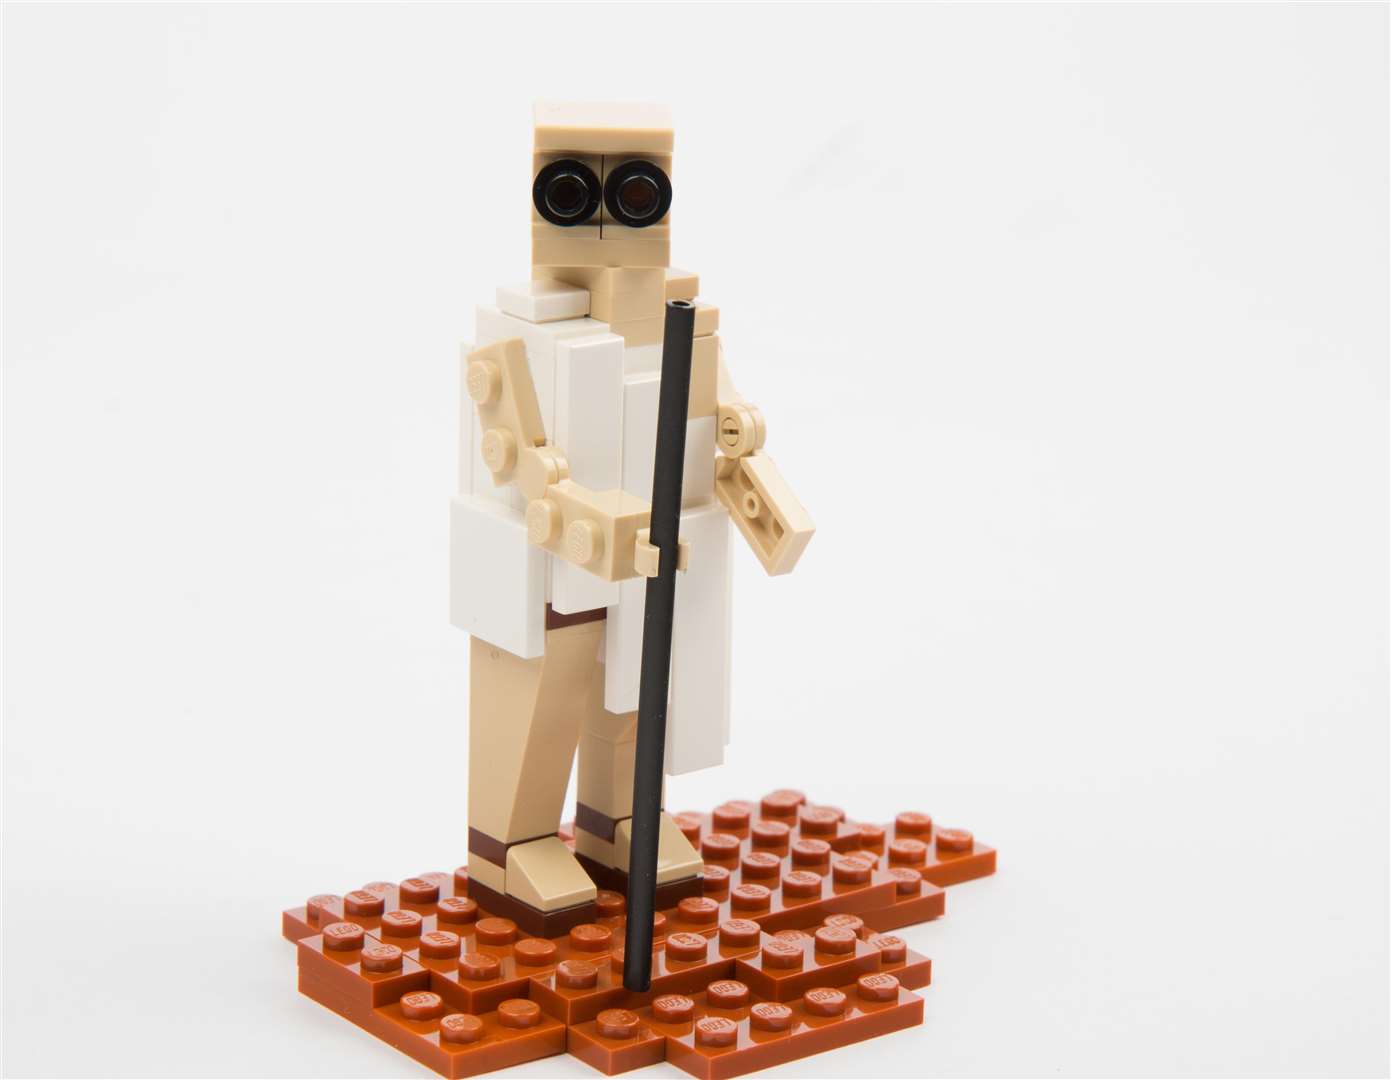 Ghandi in LEGO form